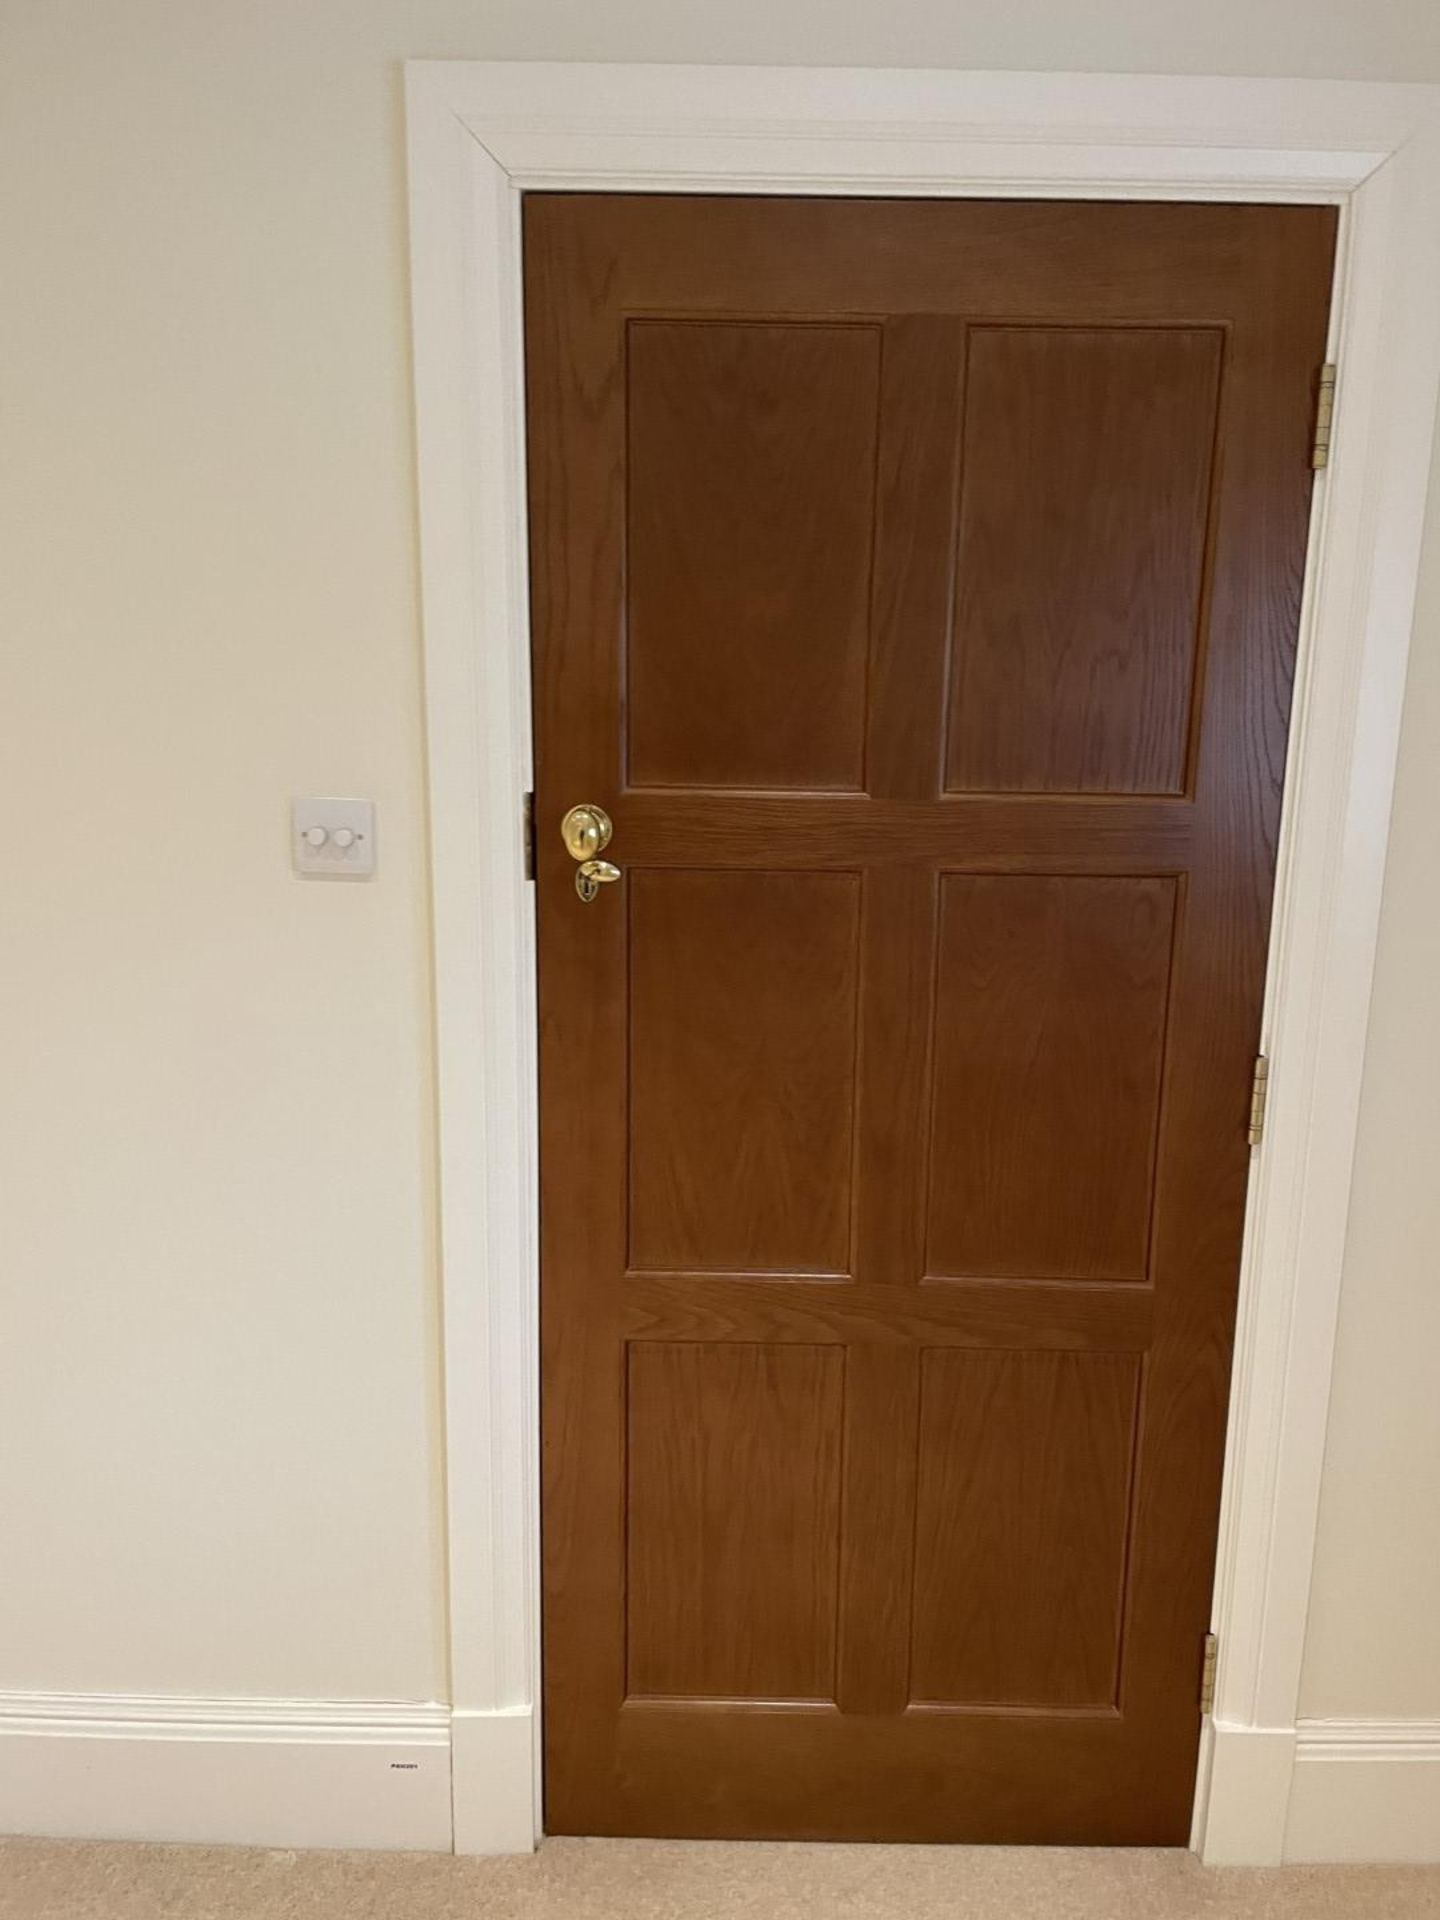 1 x Solid Oak Wooden Lockable Internal Door - Includes Handles and Hinges - Ref: PAN286 / - Image 11 of 17